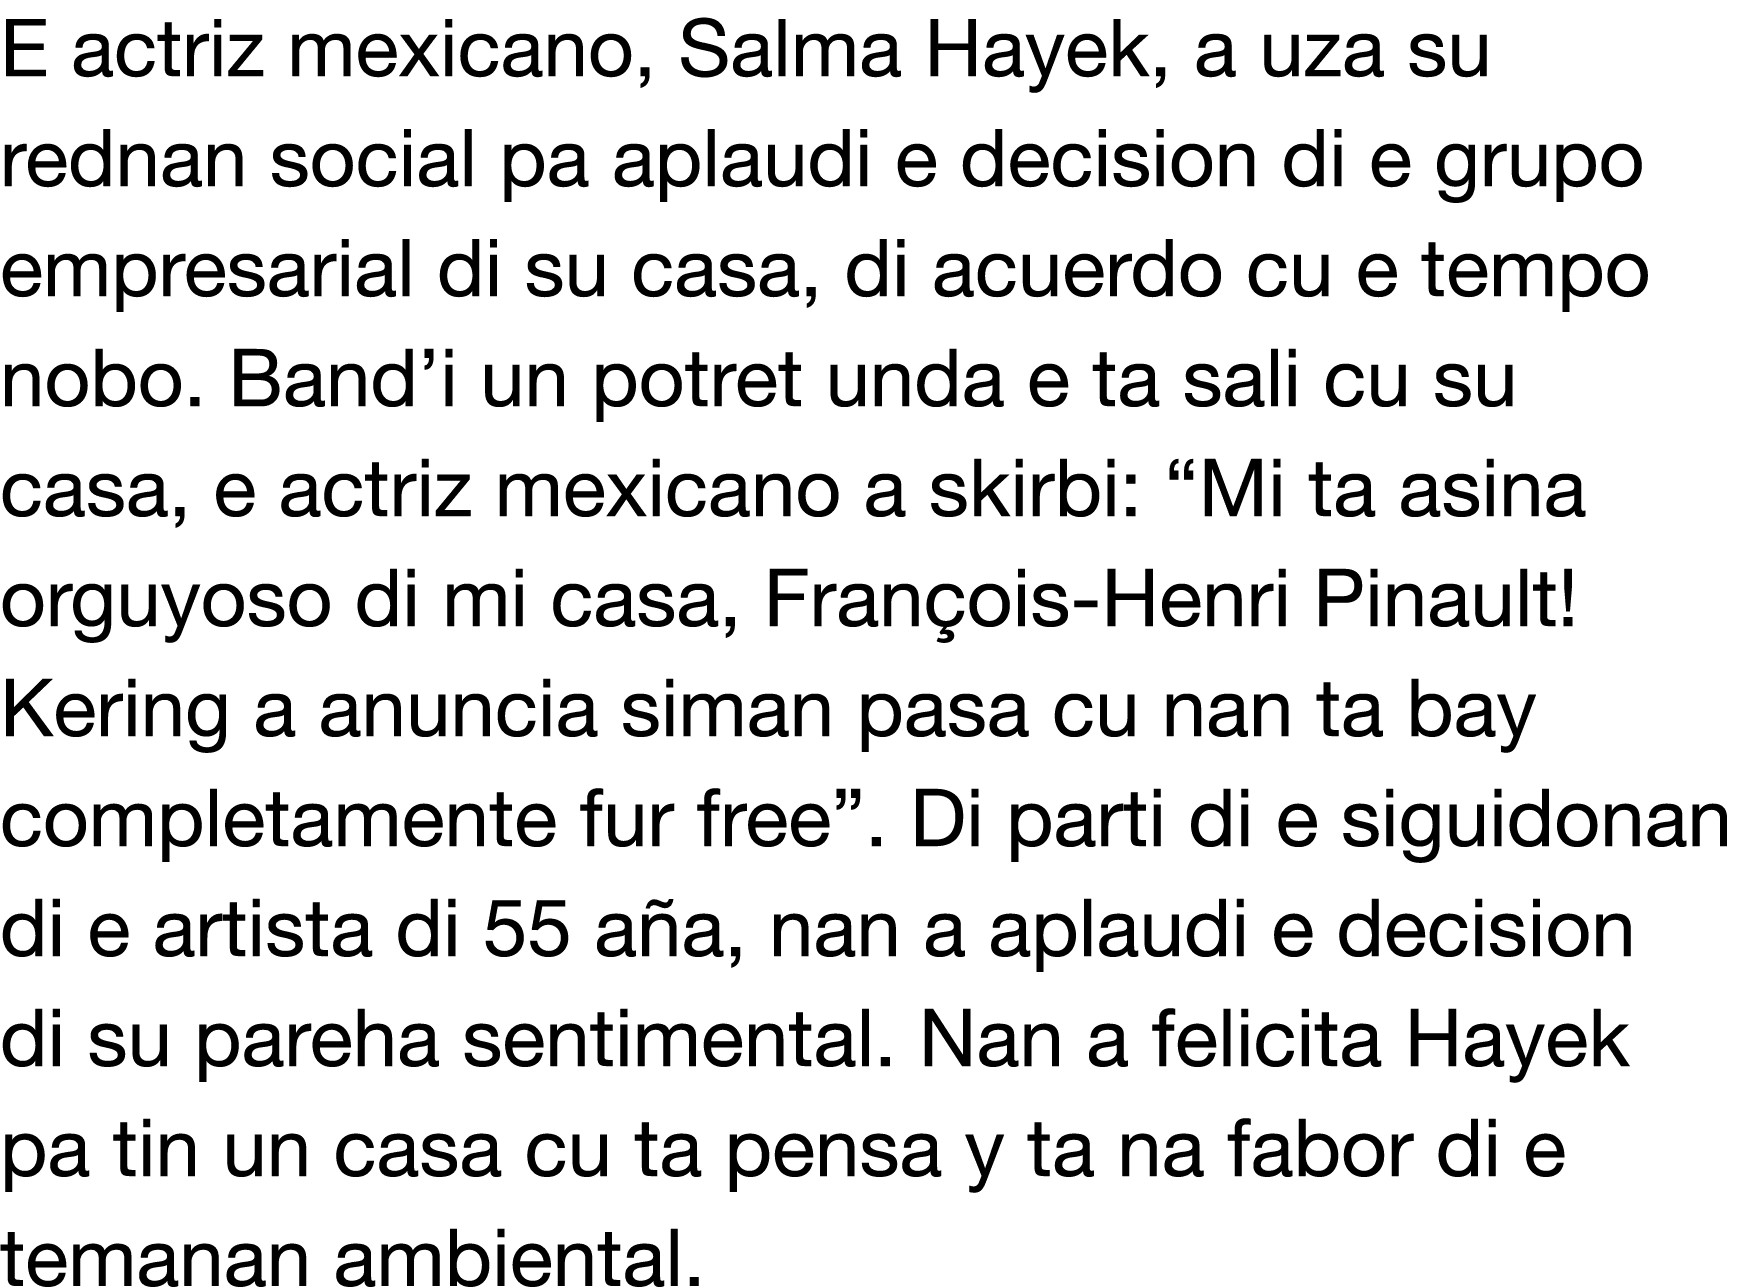 E actriz mexicano, Salma Hayek, a uza su rednan social pa aplaudi e decision di e grupo empresarial di su casa, di ac   